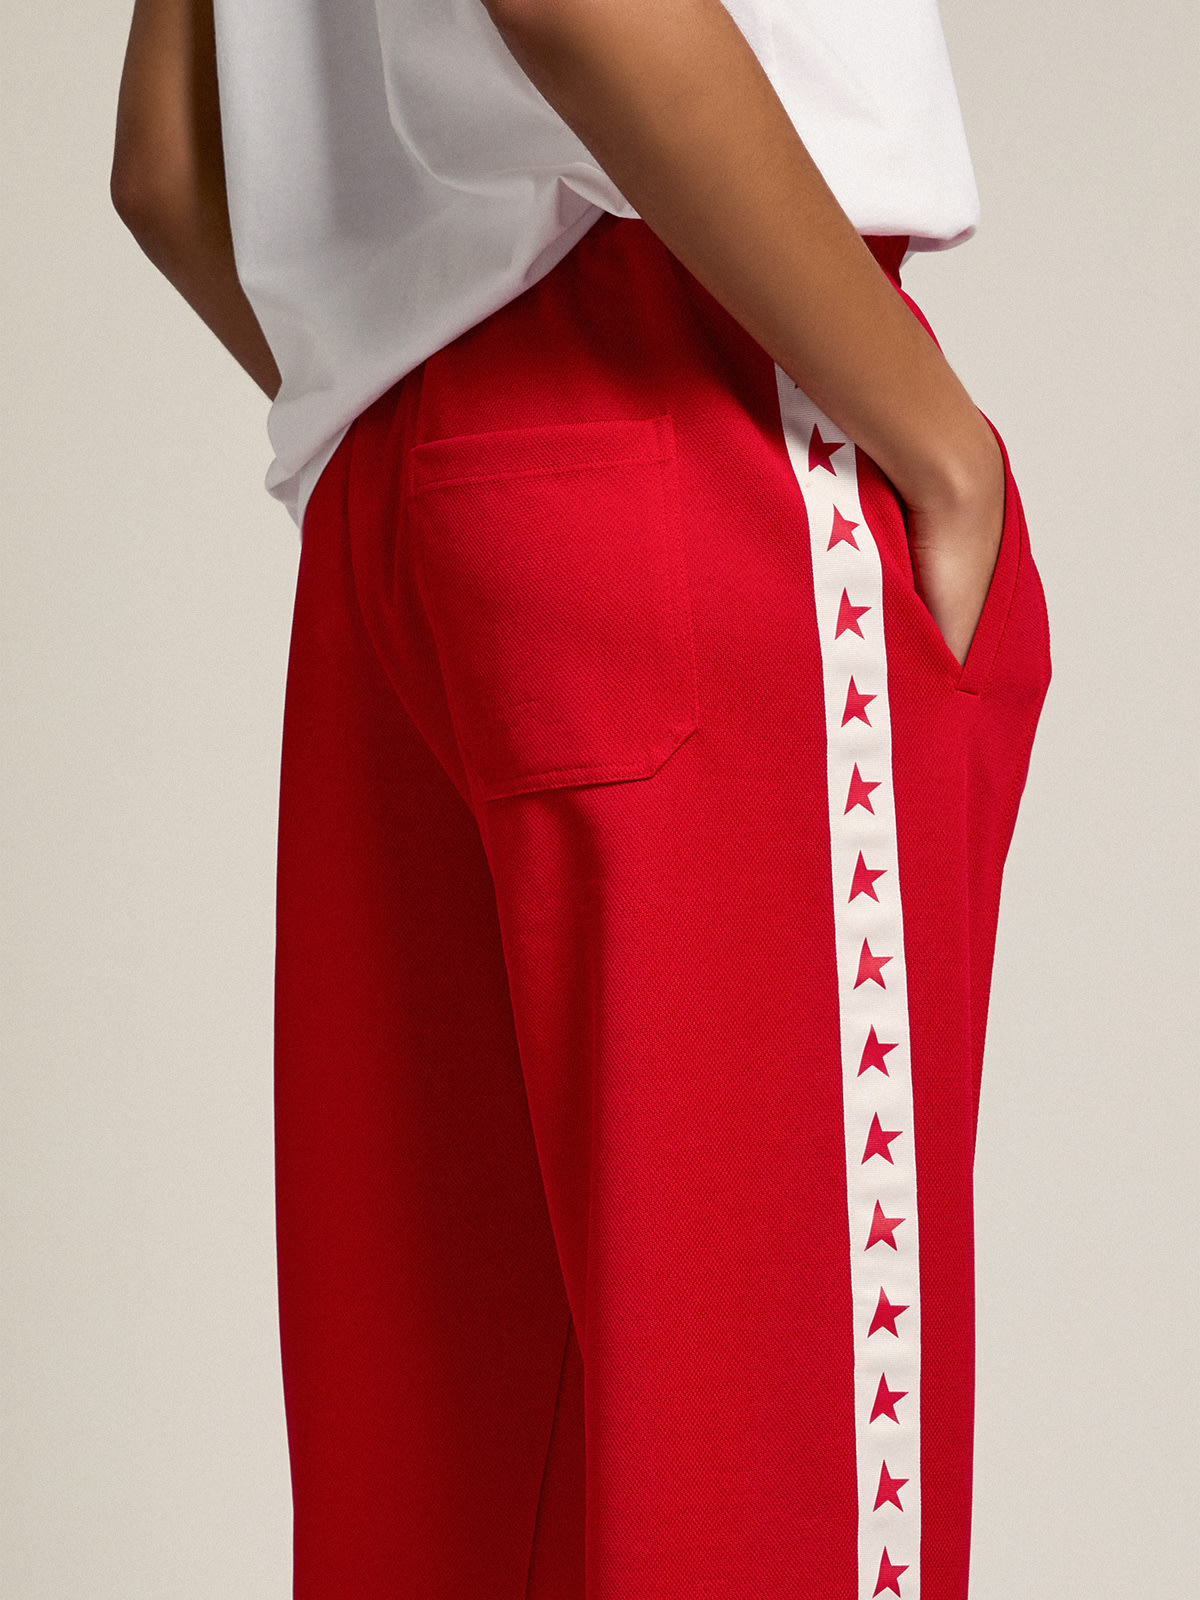 Golden Goose - Pantalon de jogging Doro collection Star de couleur rouge avec étoiles rouges sur les côtés in 